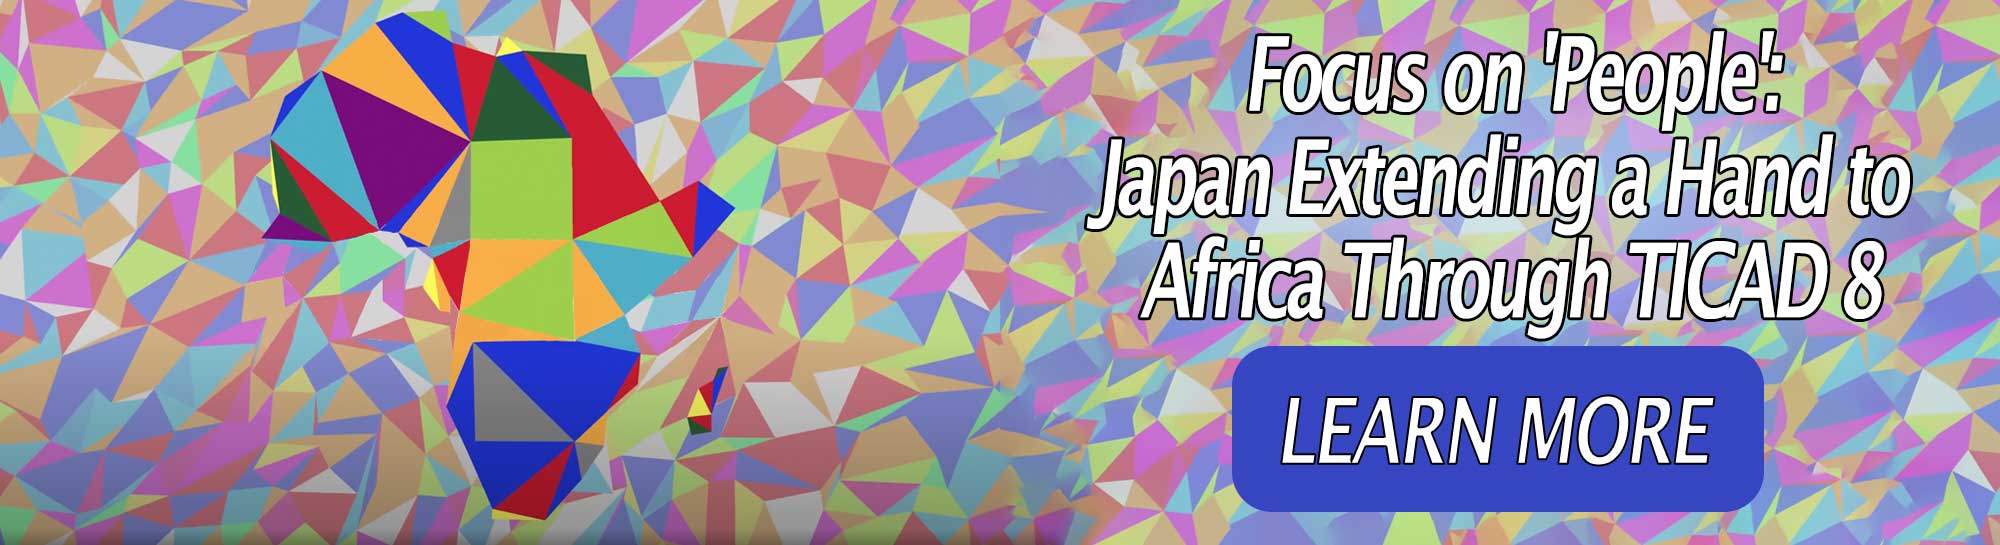 Focus sur les « personnes » : le Japon tend la main à l'Afrique à travers la TICAD 8